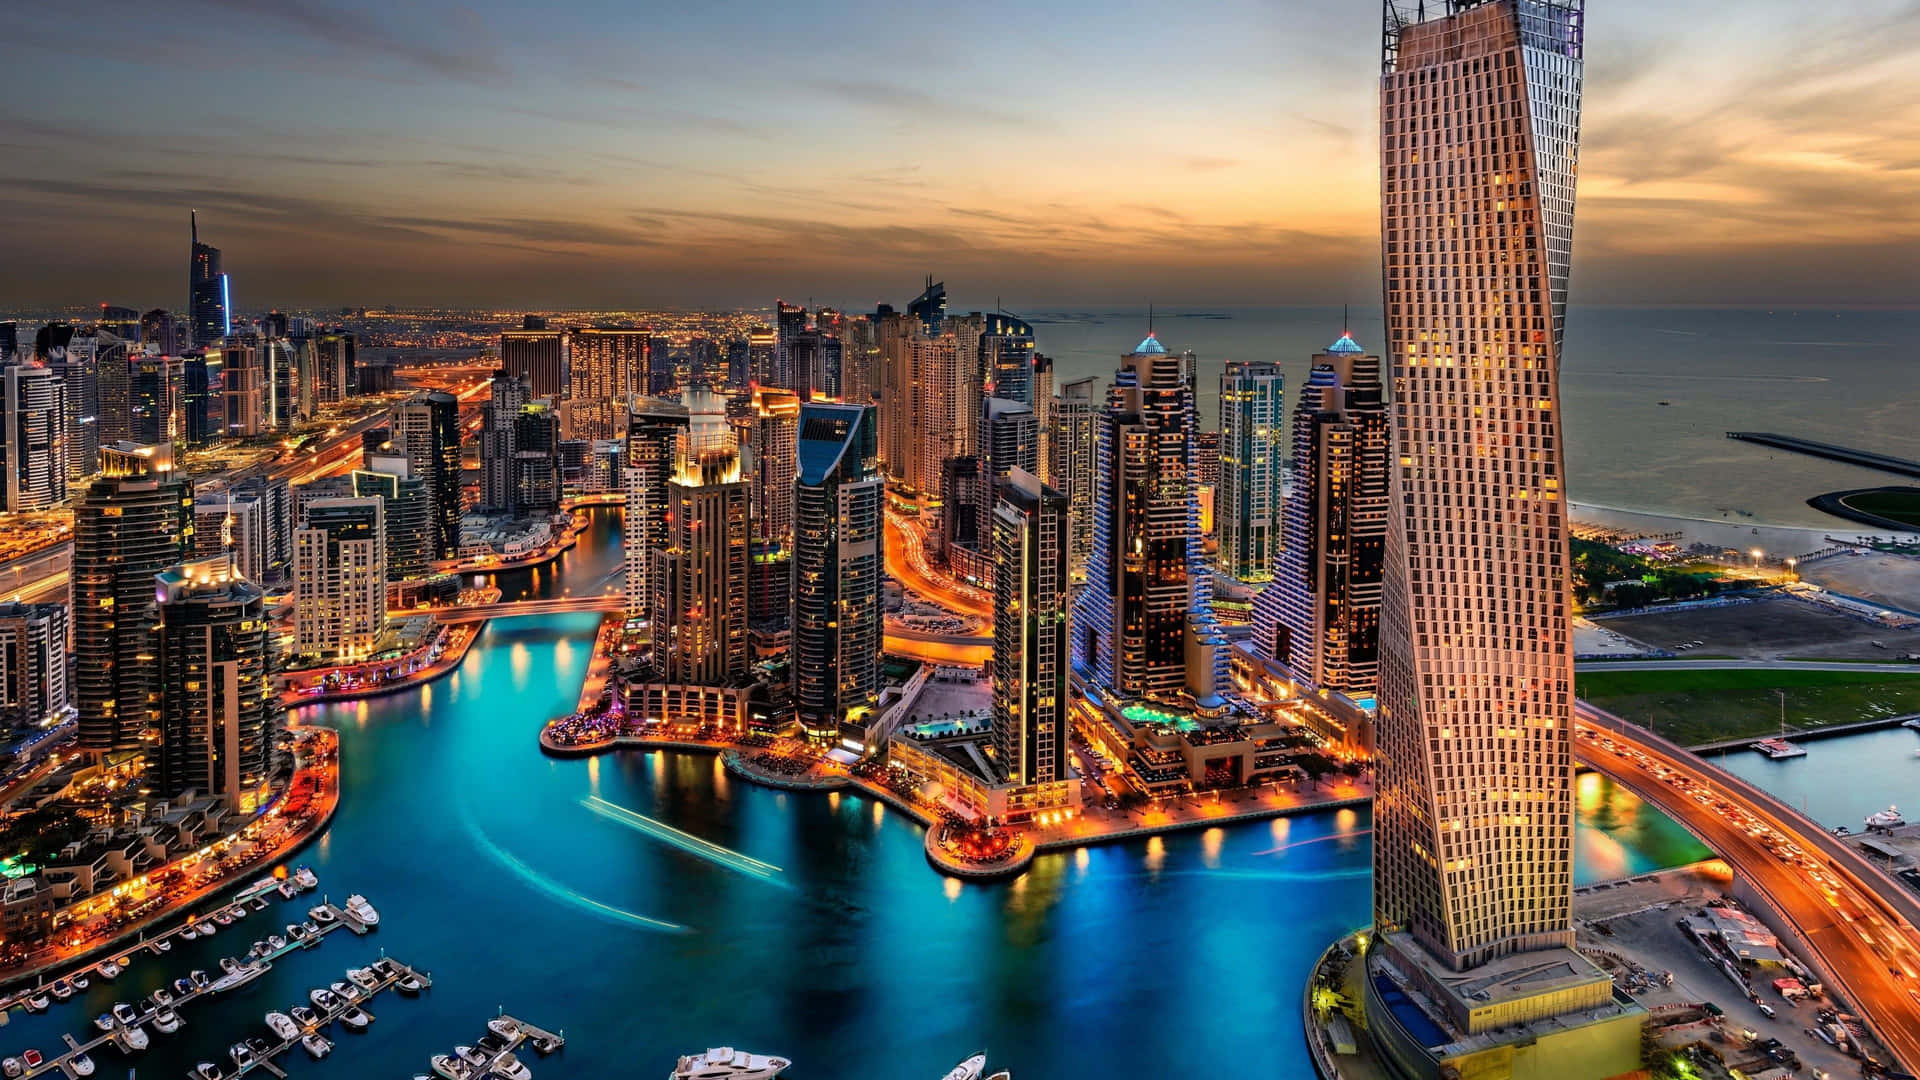 Mesmerizing Night Skyline of Dubai